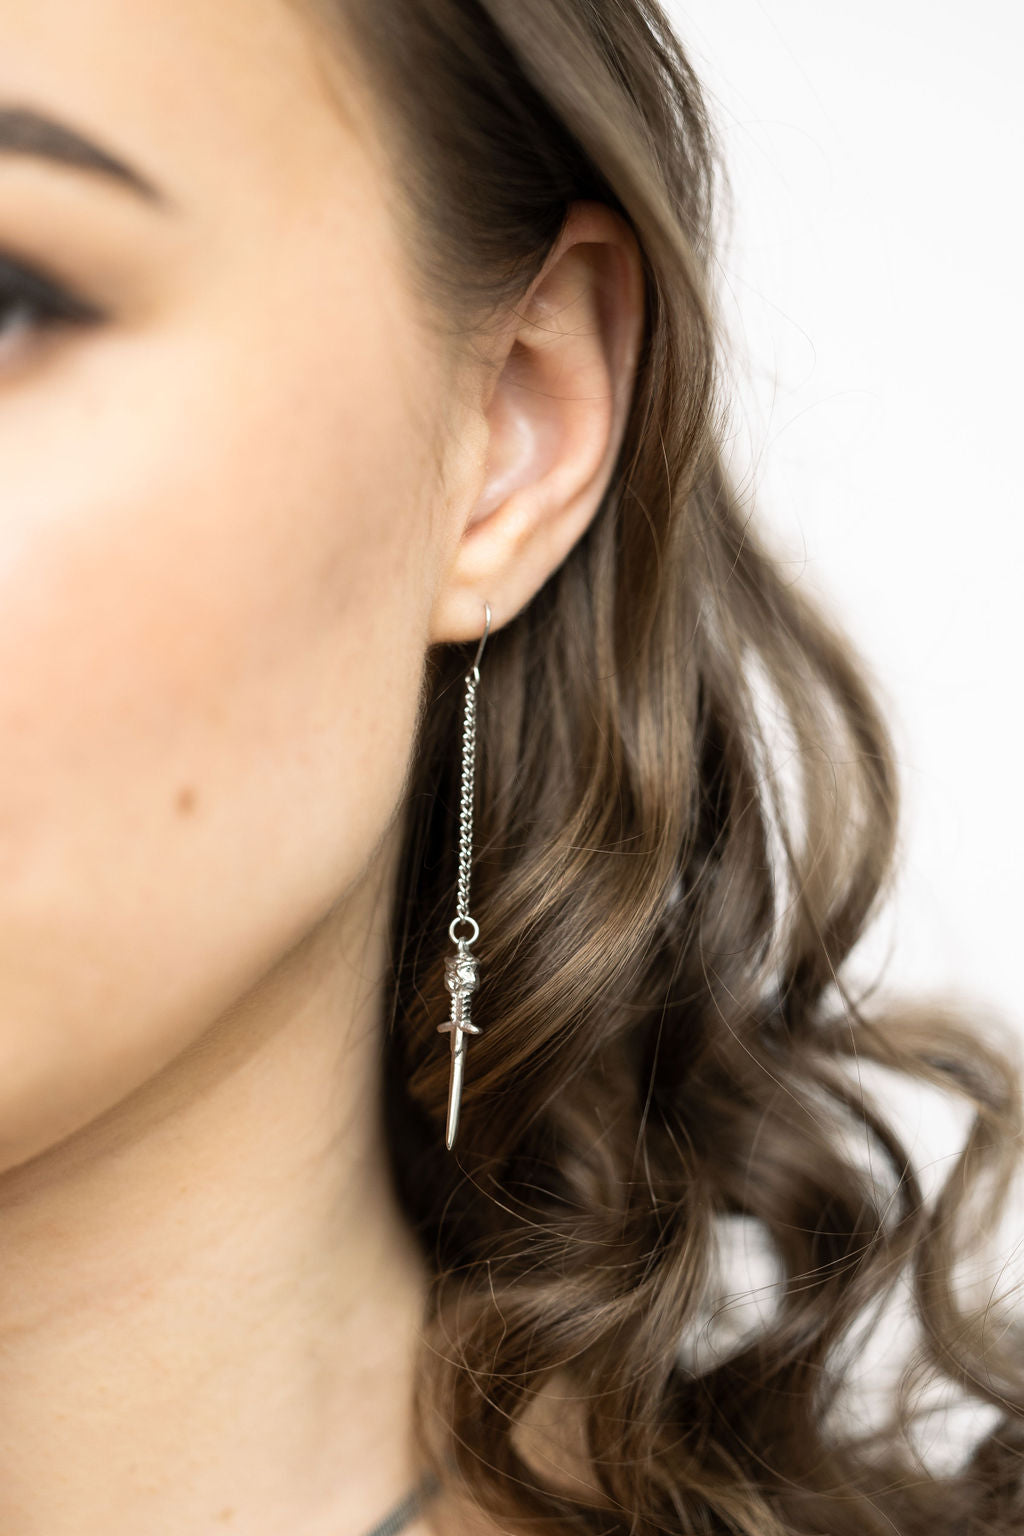 Dagger Hook Earrings – Beauty in Pain